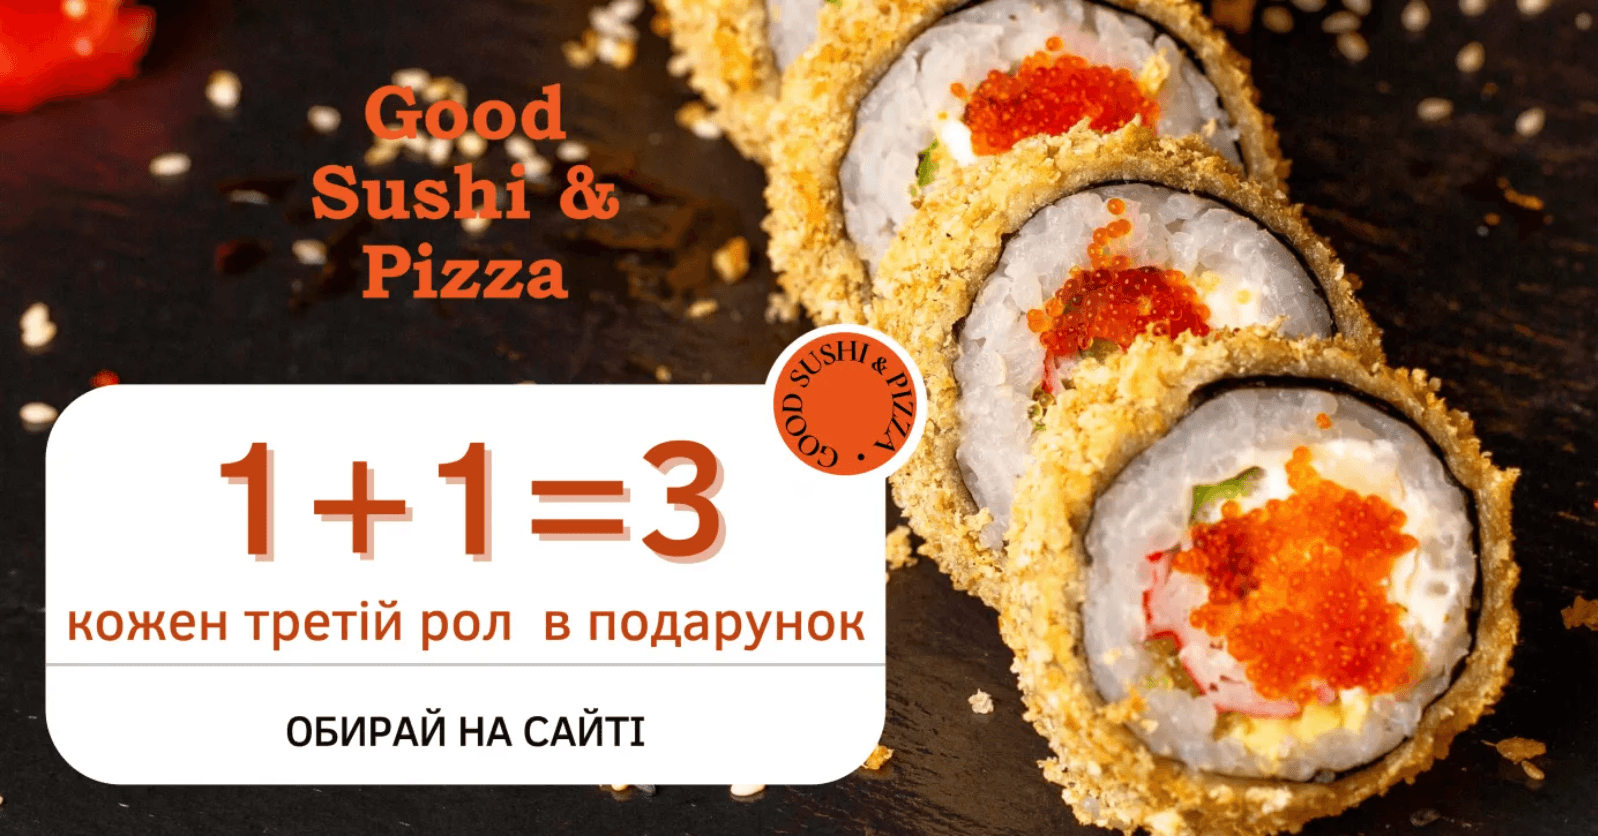 Смачні роли від Good Sushi & Pizza